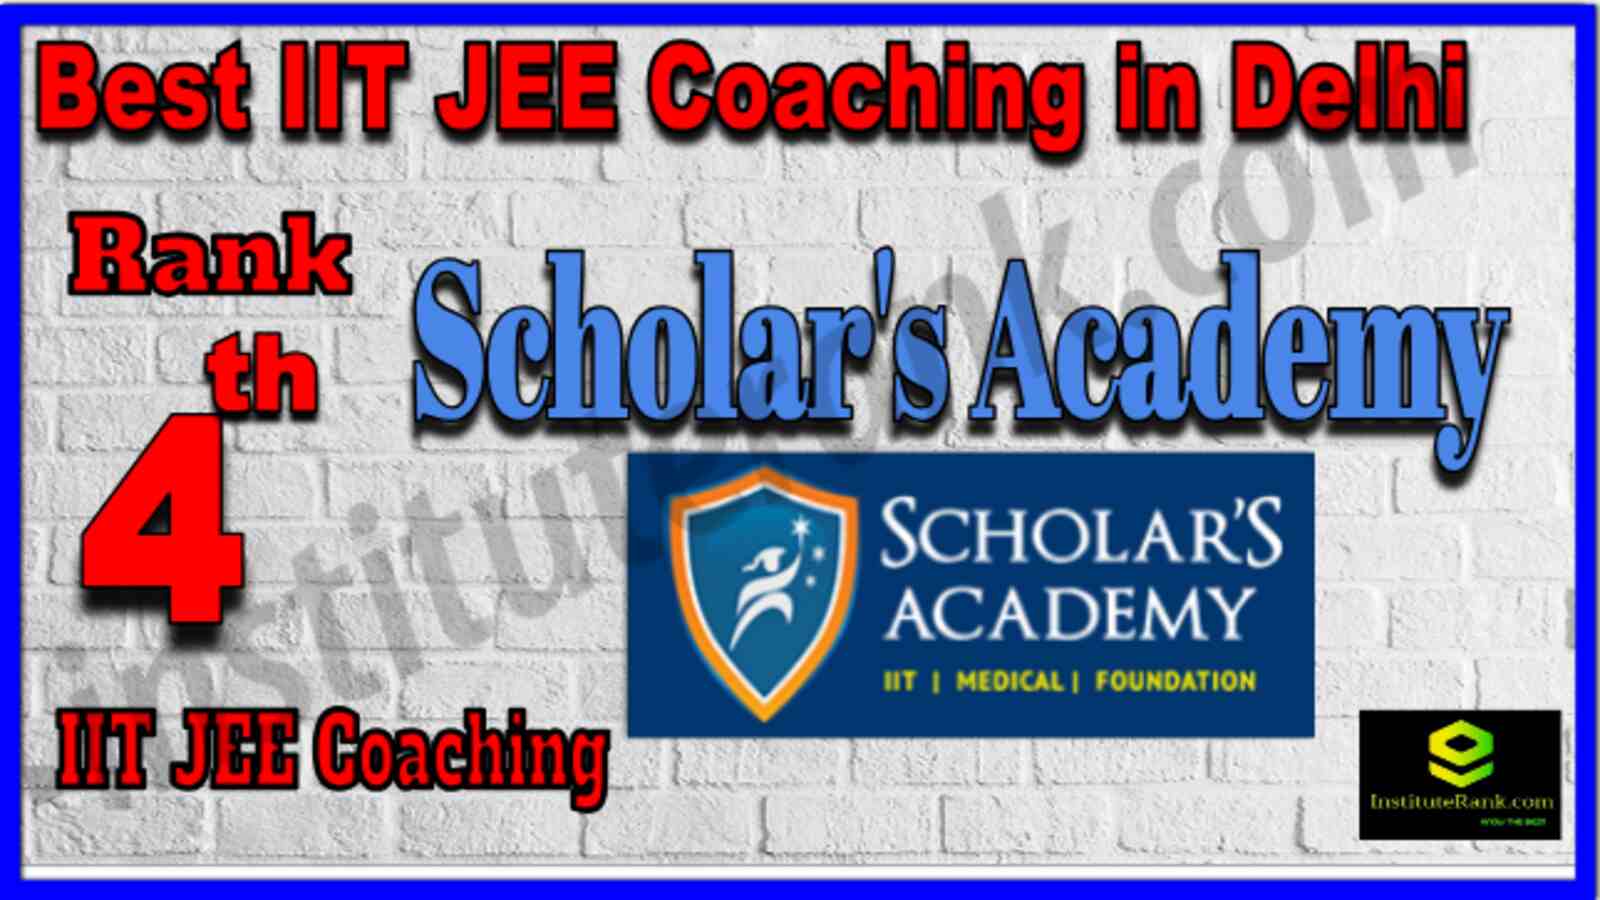 Rank 4 Best IIT JEE Coachings in Delhi